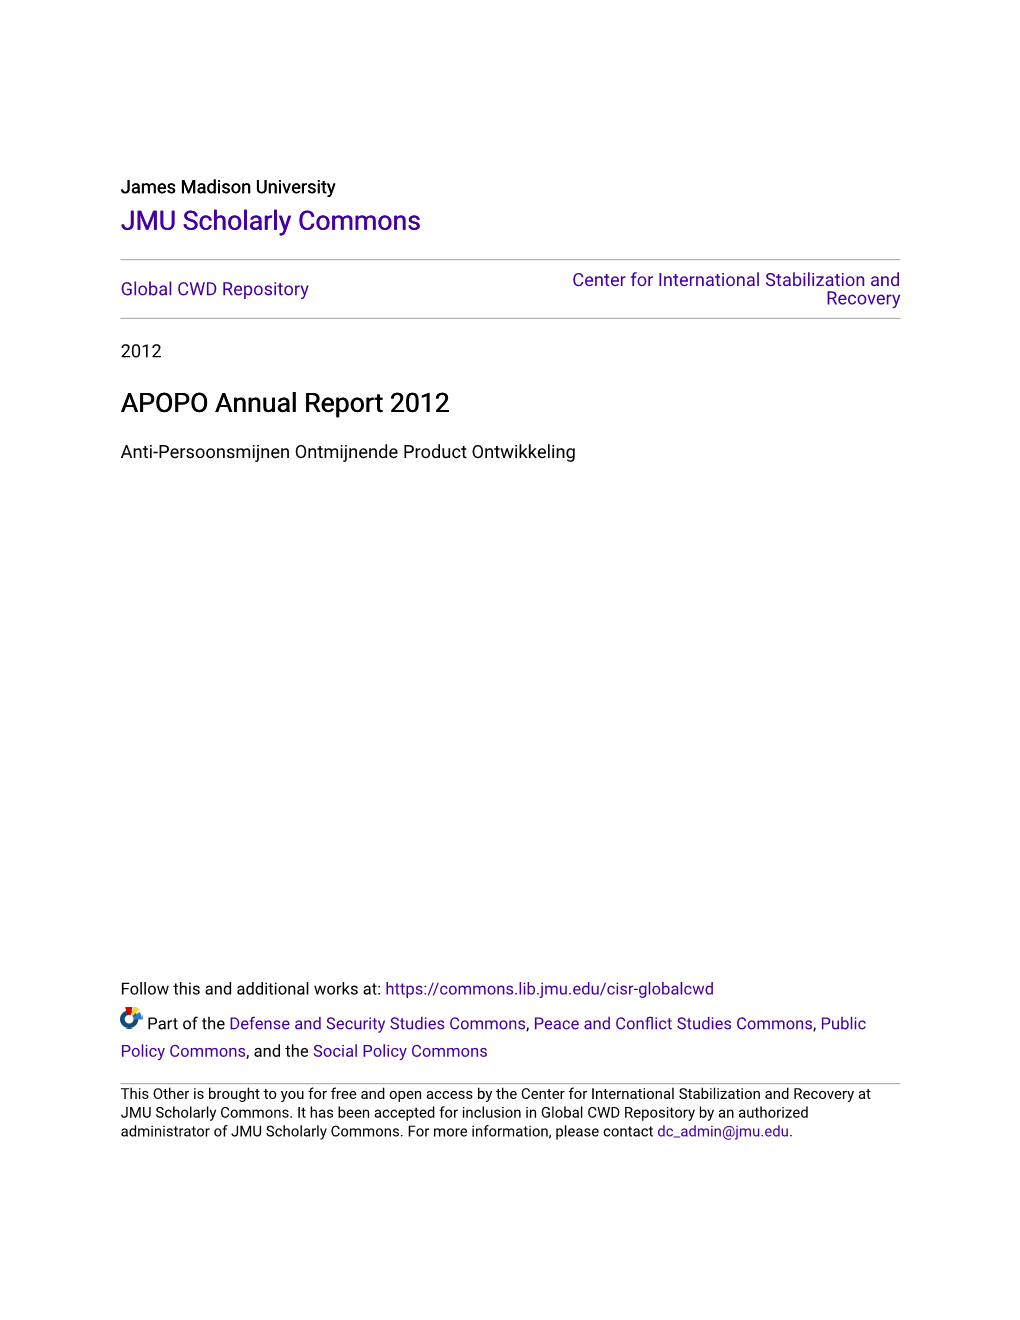 APOPO Annual Report 2012